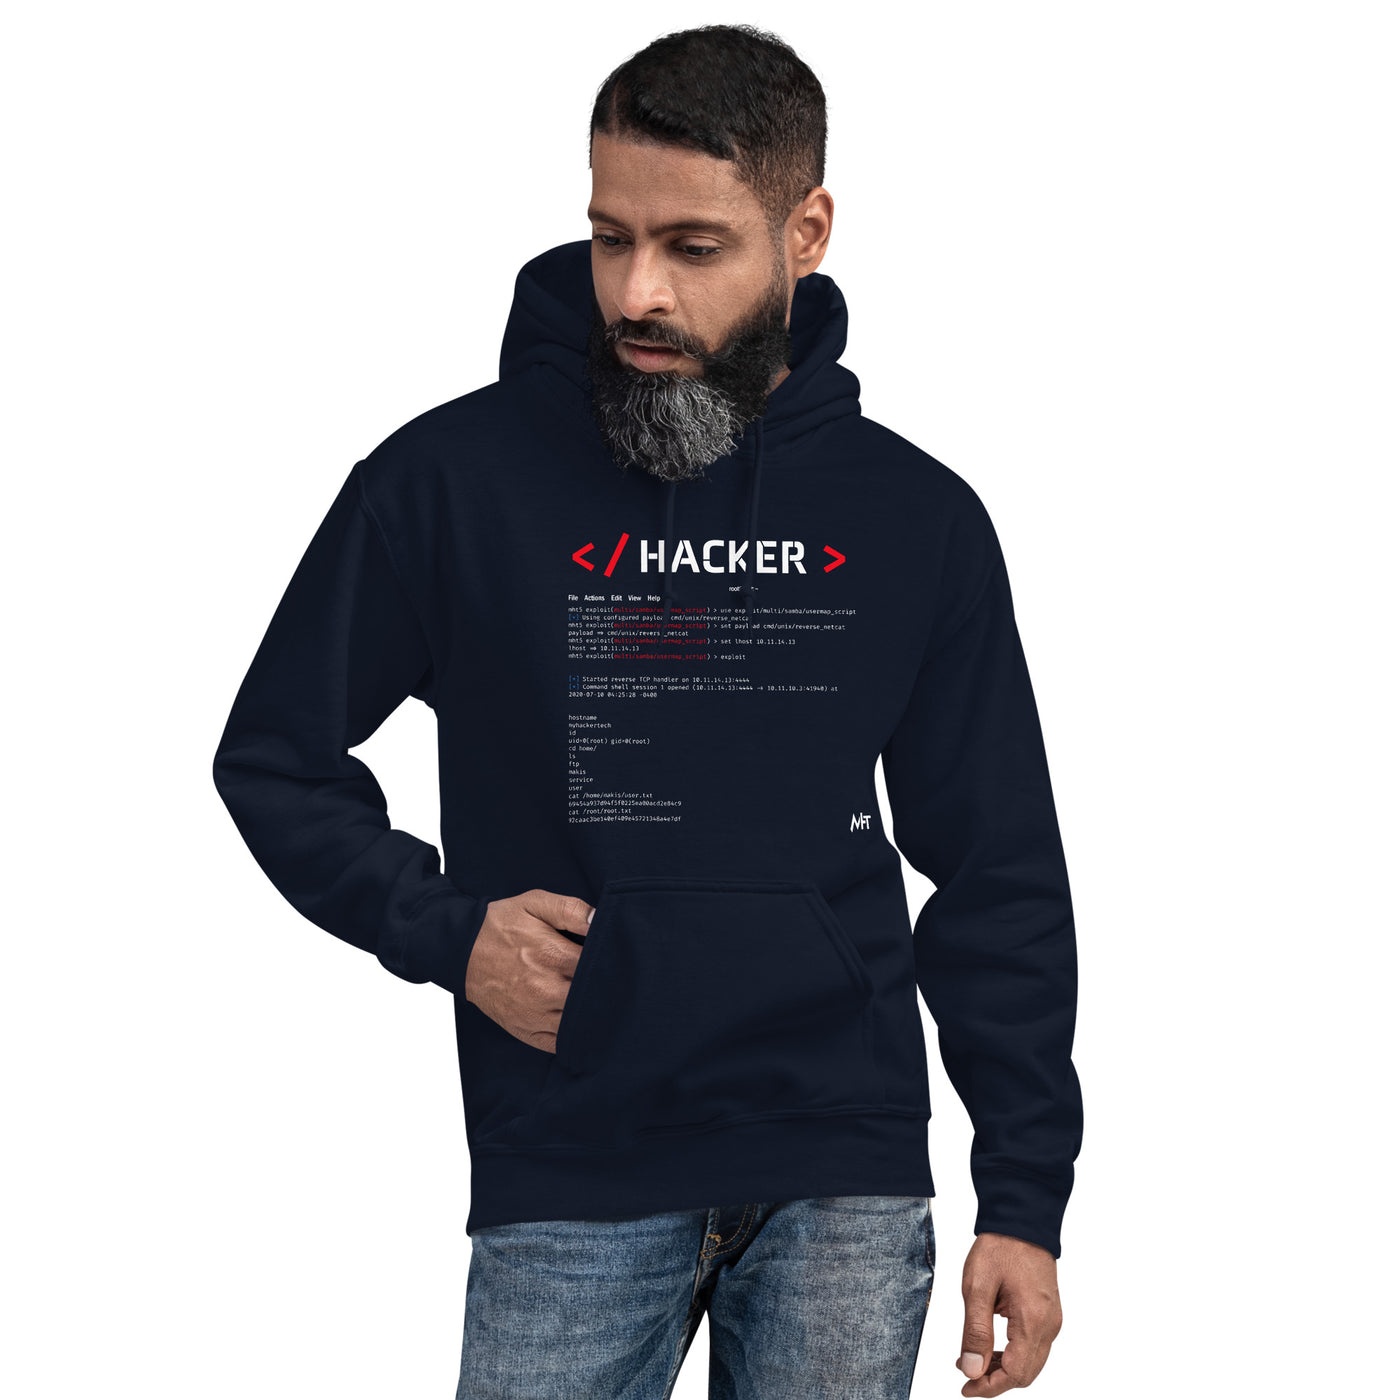 Hacker v.1 - Unisex Hoodie